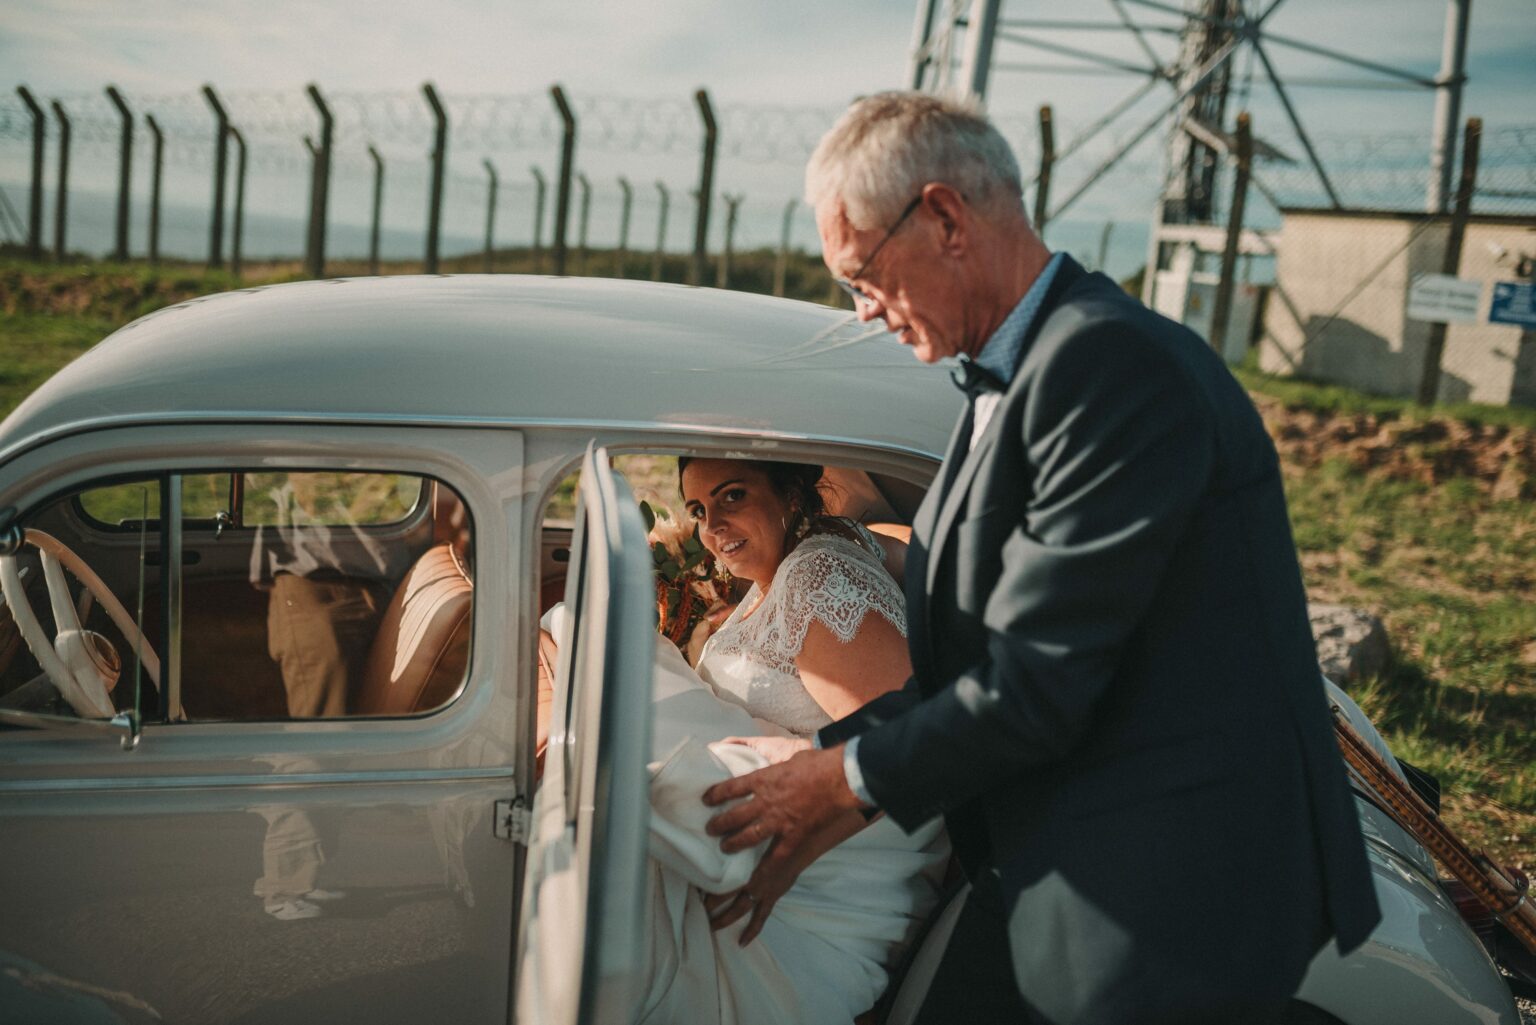 Mariage en Normandie de Marlène et François à Barneville Carteret par Alain Leprévost photographe en Normandie